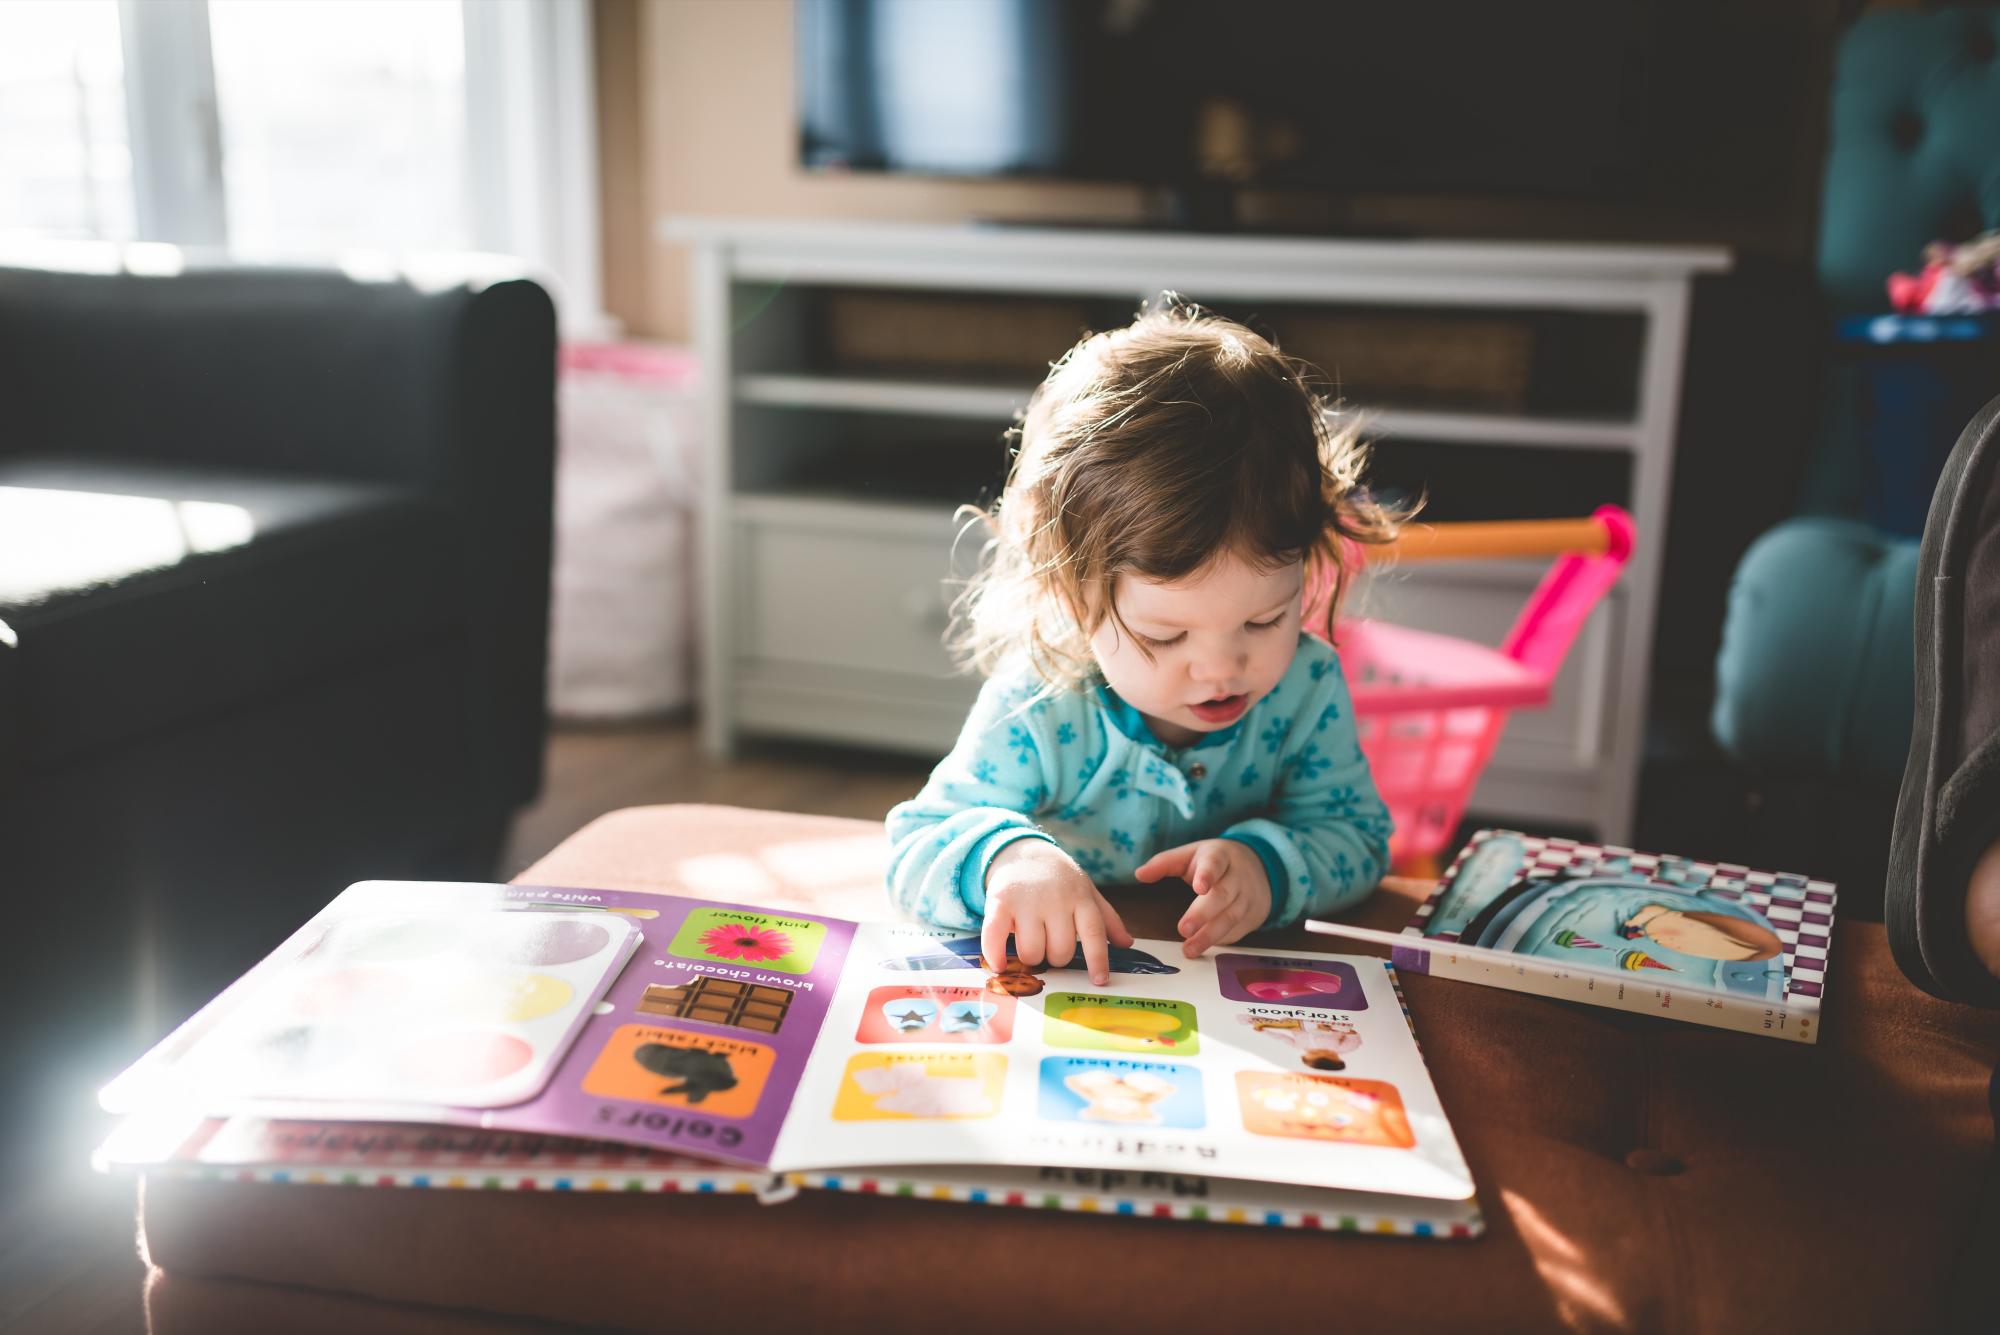 $!En lugar de tablets o smartphones, los bebés pueden utilizar libros con colores vibrantes y texturas para estimularlos.